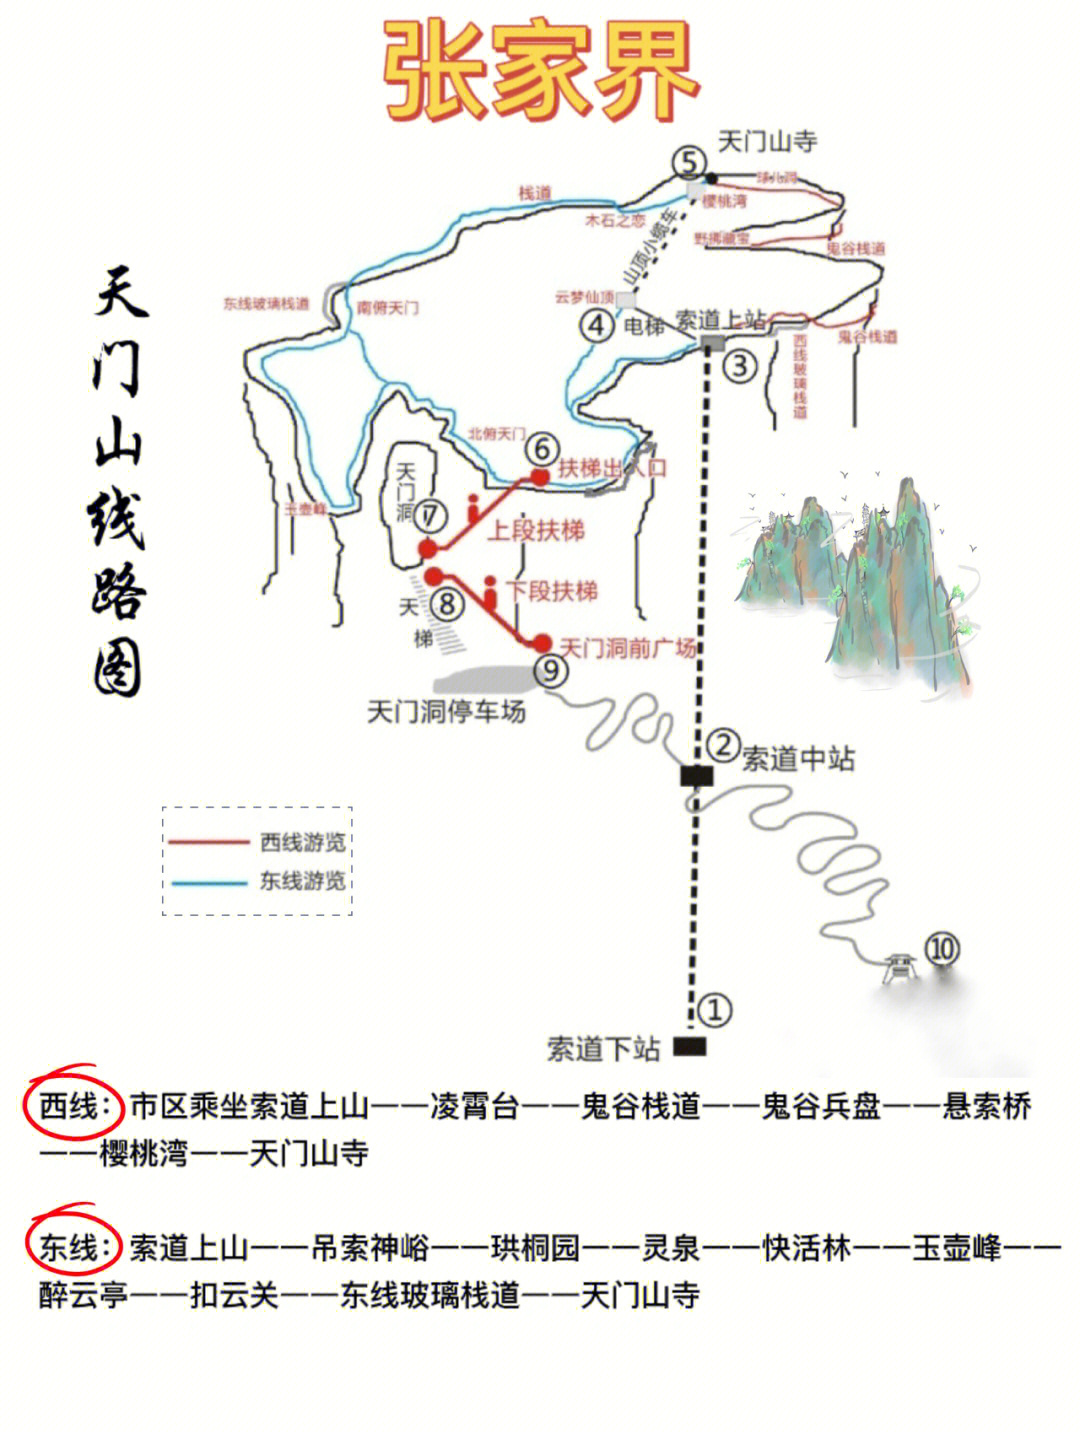 天门山地图旅游详图图片